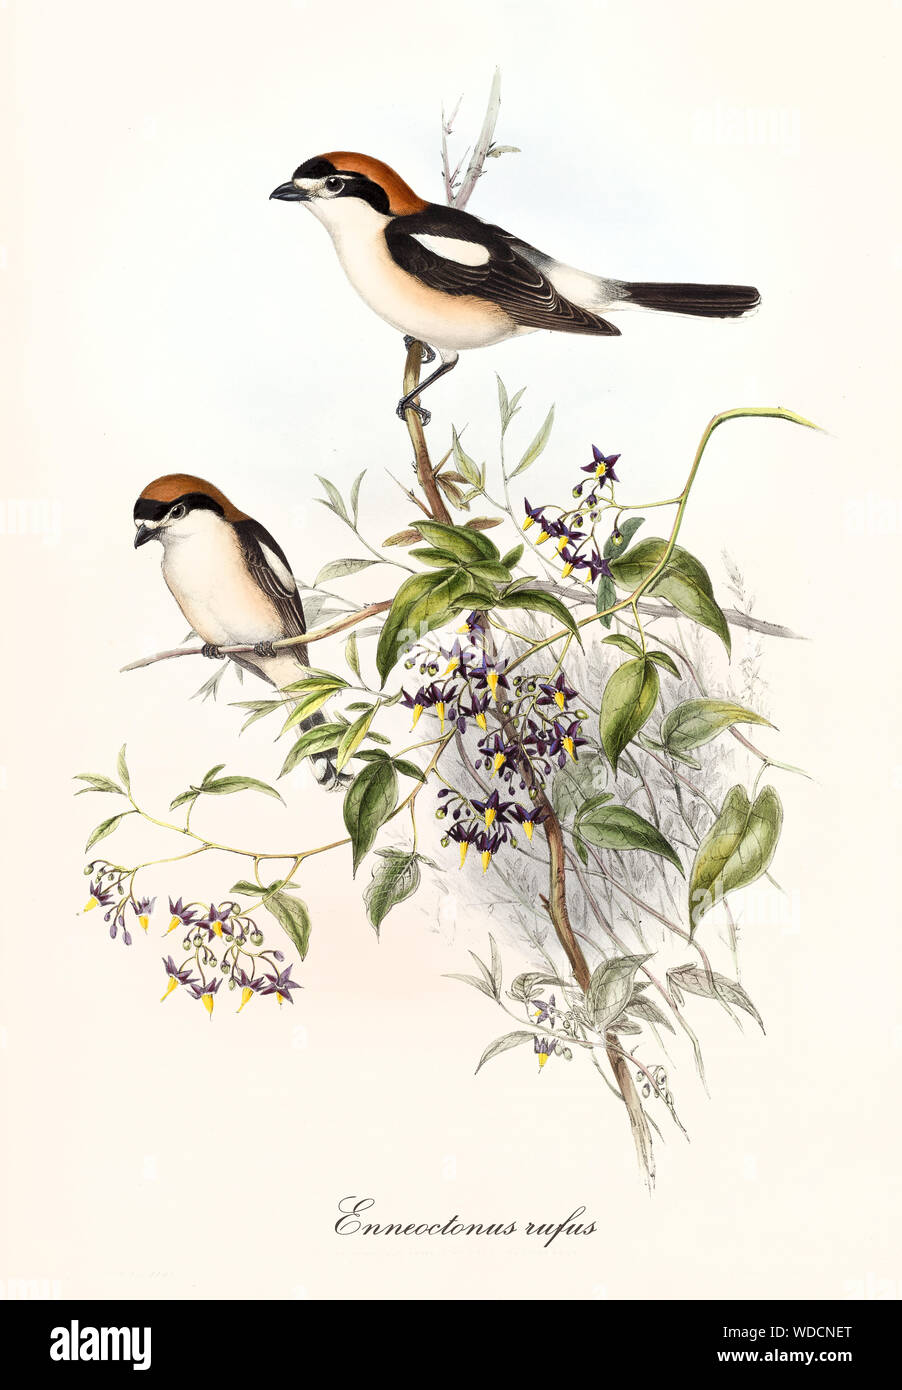 Zwei kleinen niedlichen Vögel beobachten, um stehend auf einem einzigen Zweig. Alte botanische und detaillierte Darstellung von Shrike Rotkopfwürger (Lanius Senator). Von John Gould publ. In London, 1862 - 1873 Stockfoto